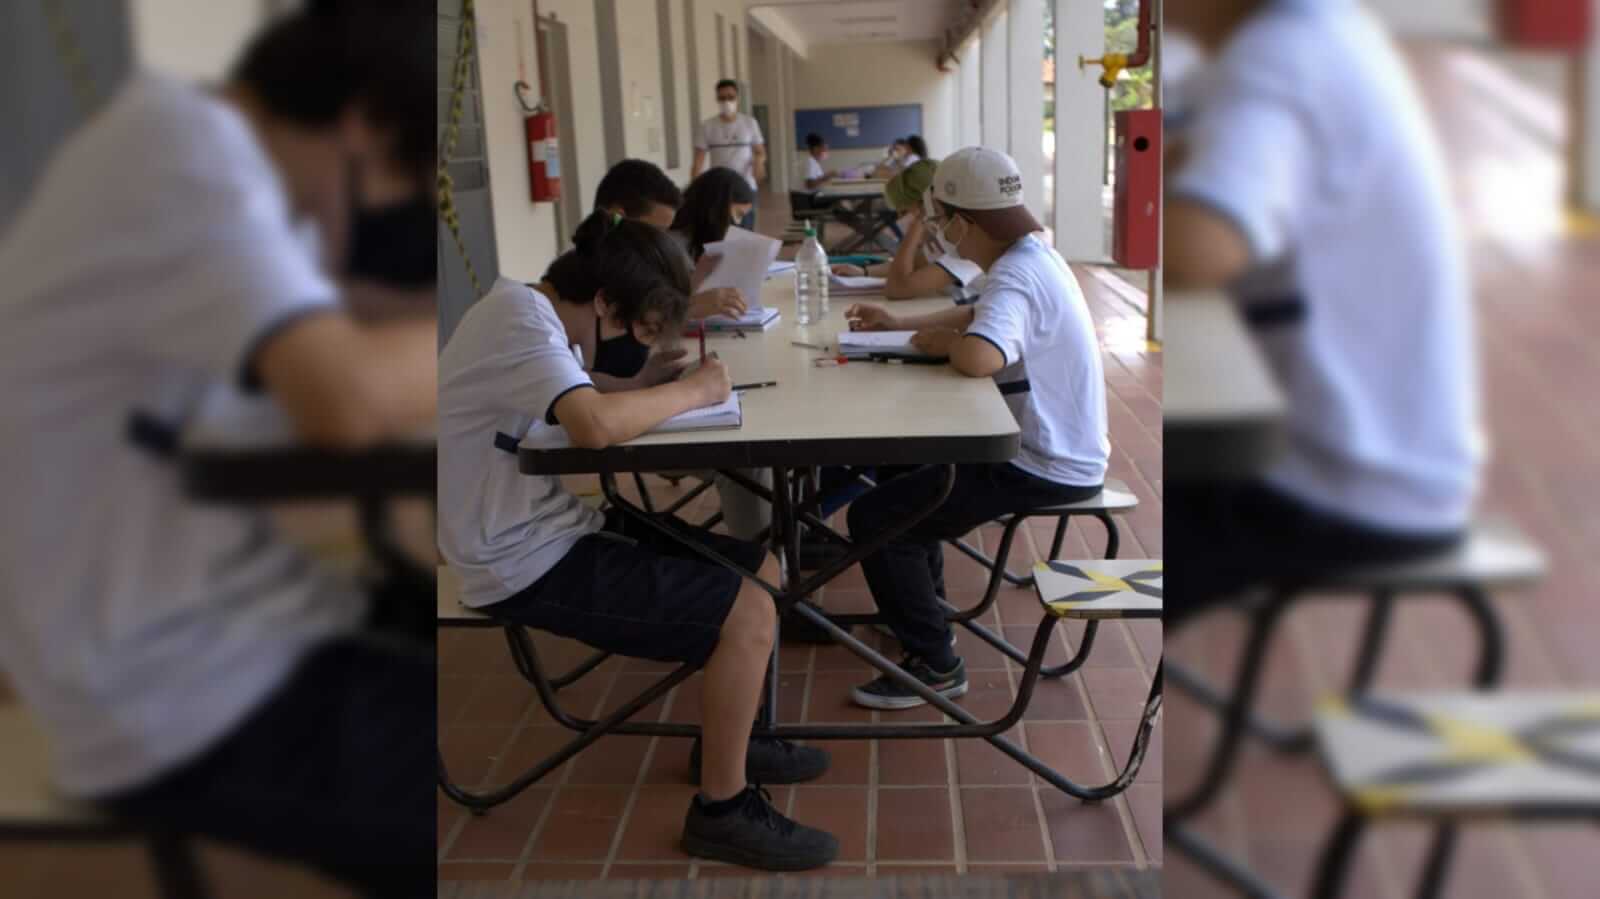 Adolescentes sentados envolta de uma mesa na escola estudando